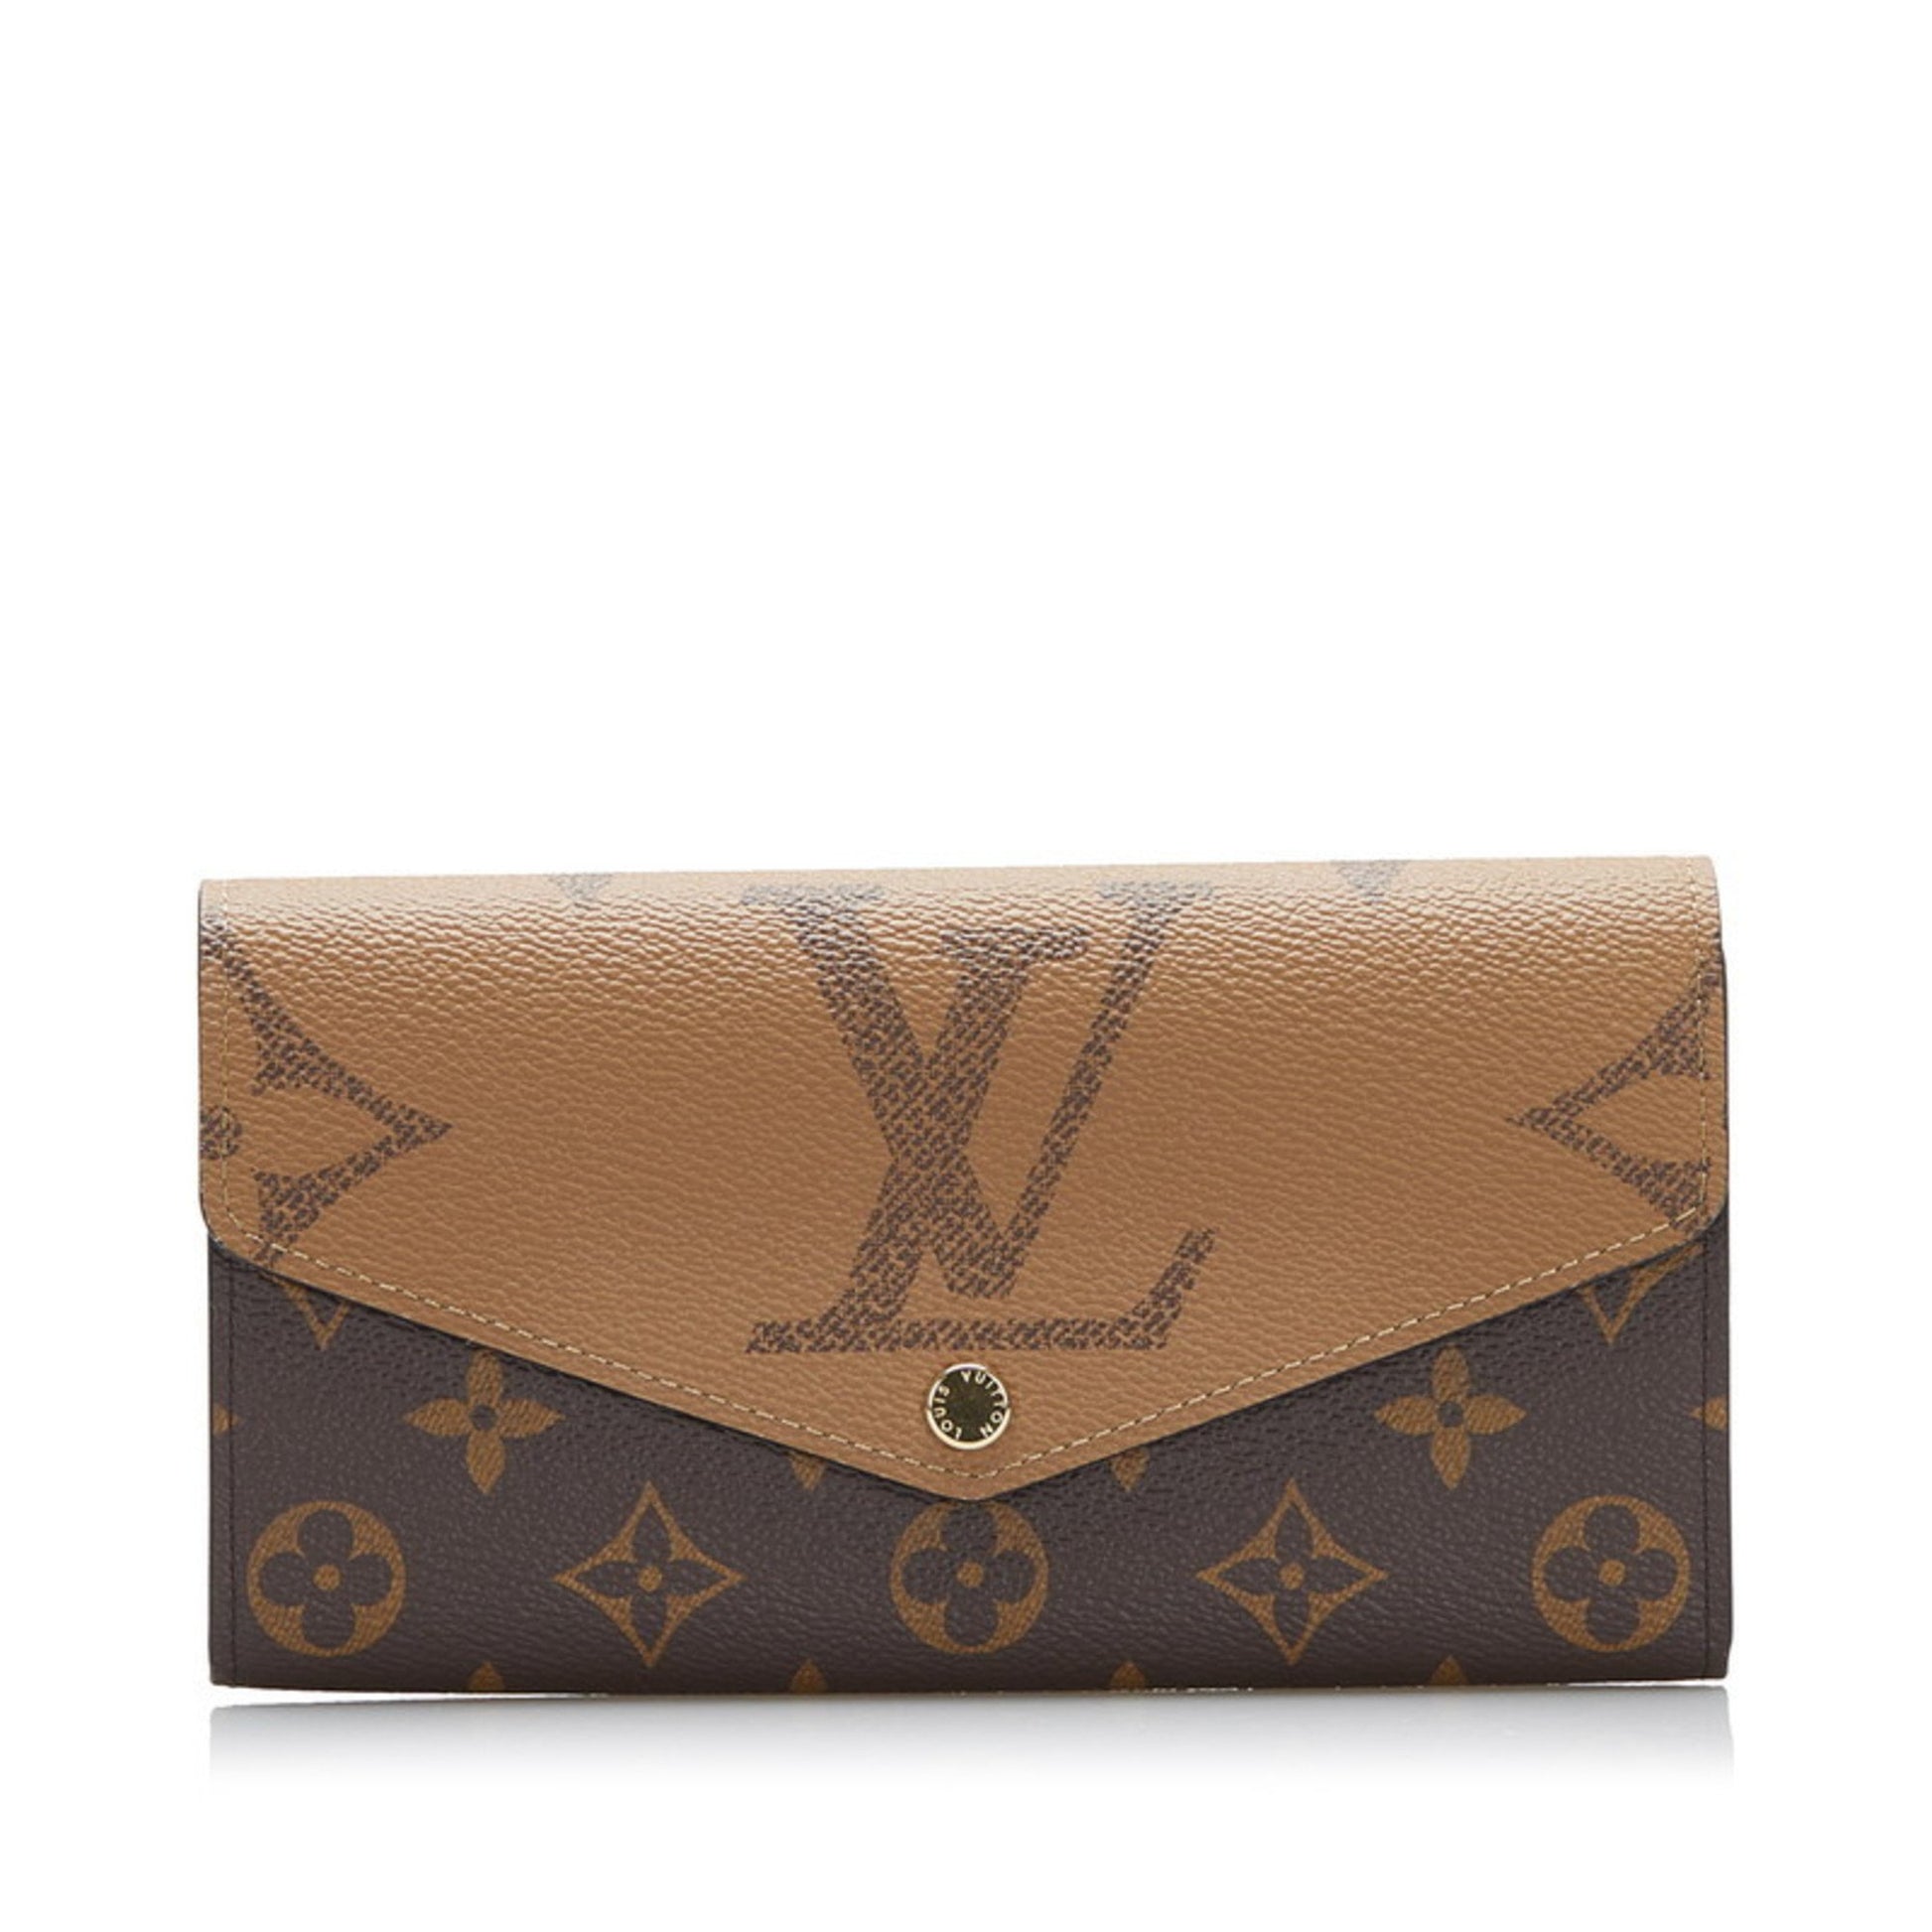 Shop Louis Vuitton PORTEFEUILLE SARAH Sarah Wallet (M80726) by